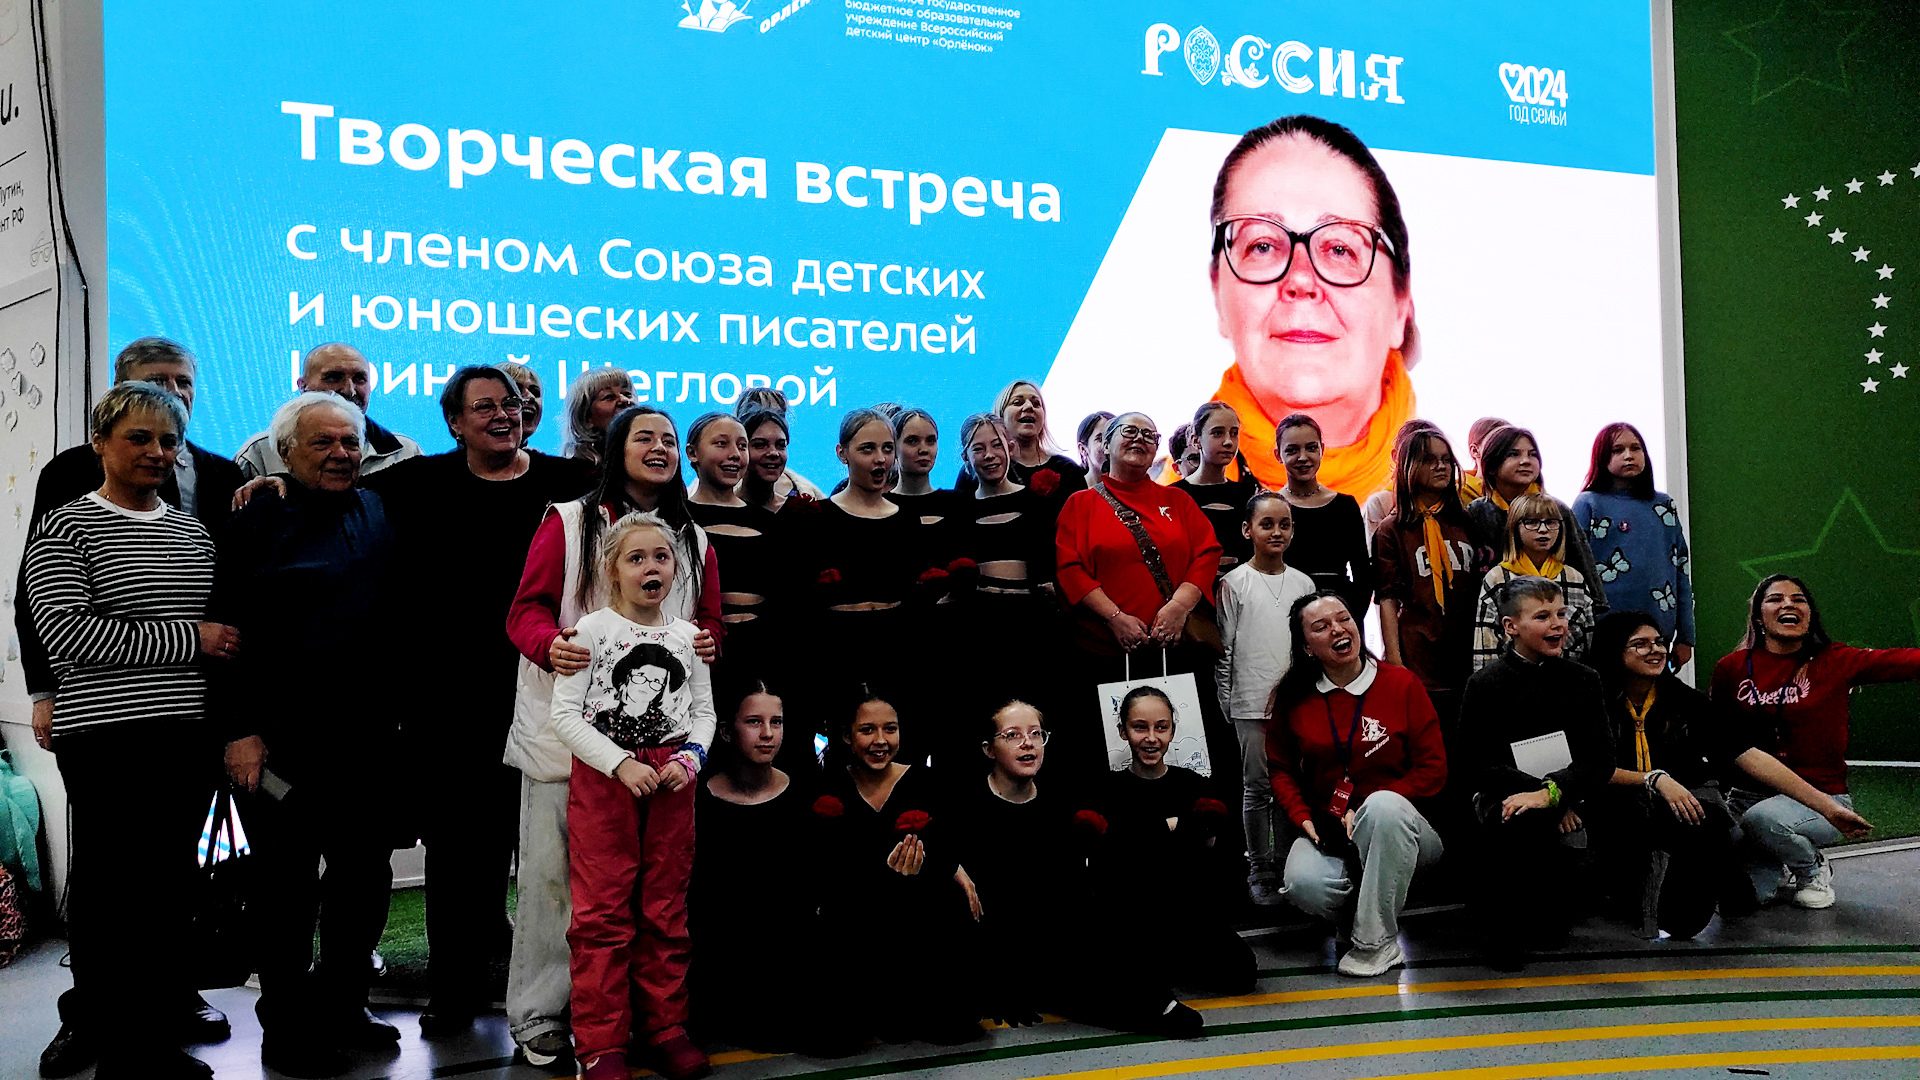 Выступление Ирины Щегловой на выставке "Россия"  на ВДНХ